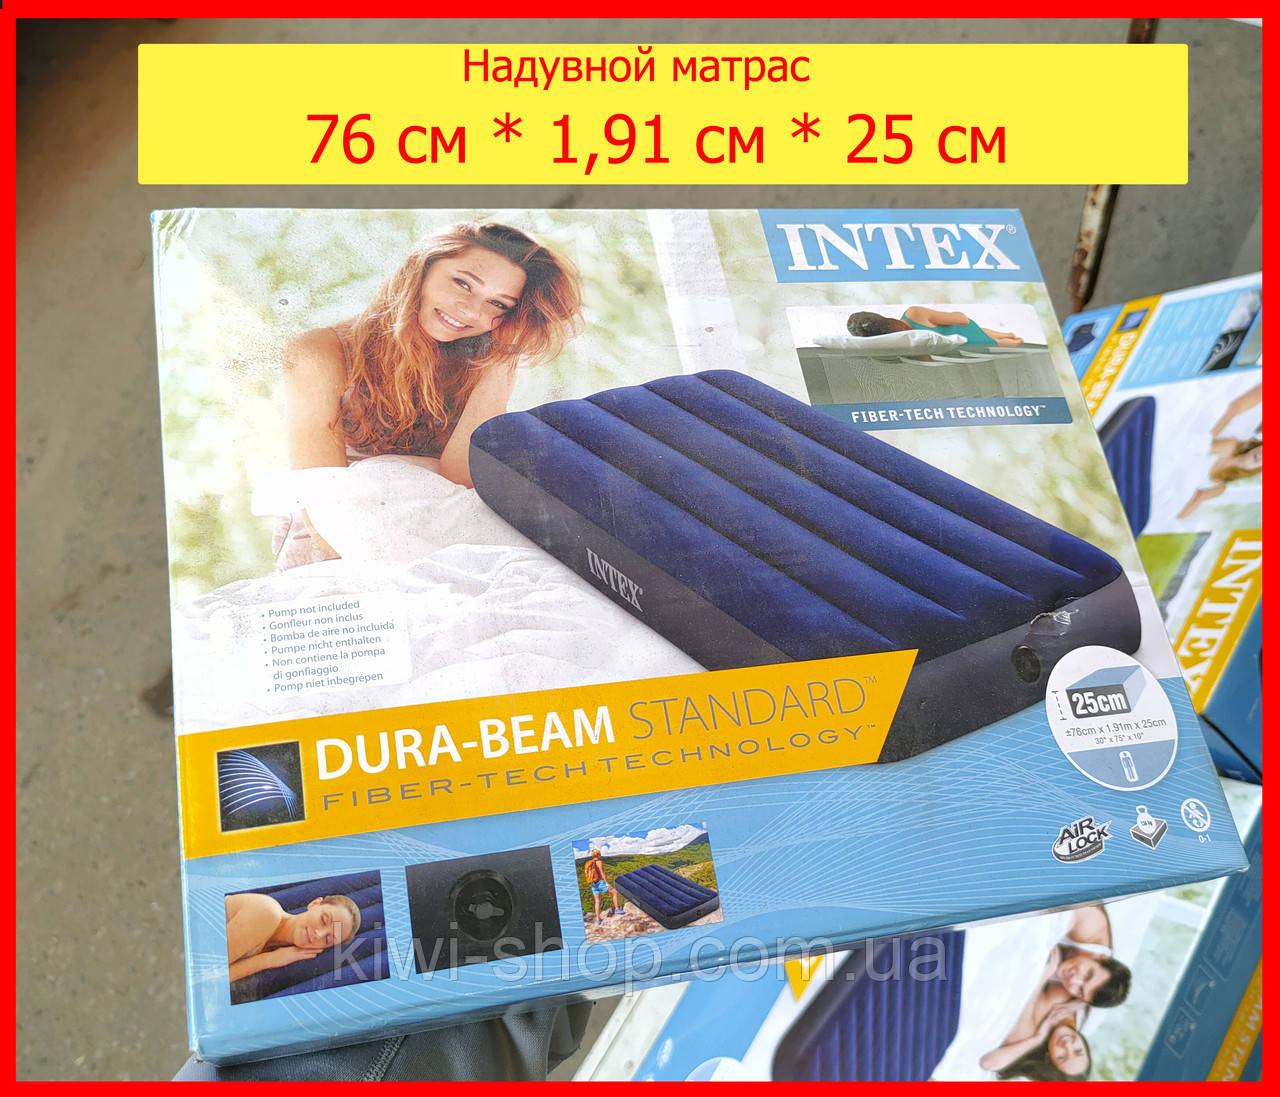 Надувний матрац Intex 64756 синій велюр 76см * 1,91 см * 25см, водний матрац для сну або плавання одномісний